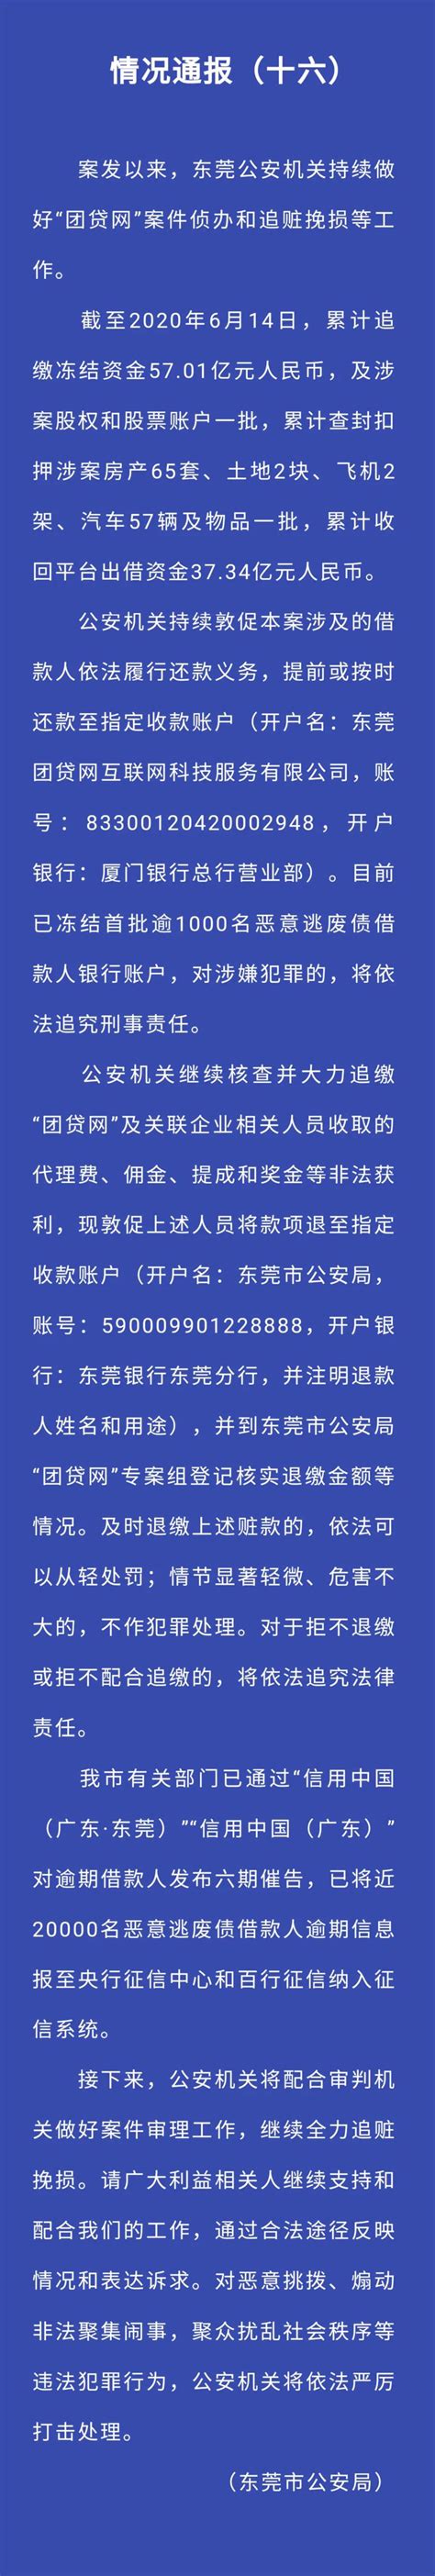 东莞市公安局官微发布 “团贷网”案件最新进展_广东频道_凤凰网